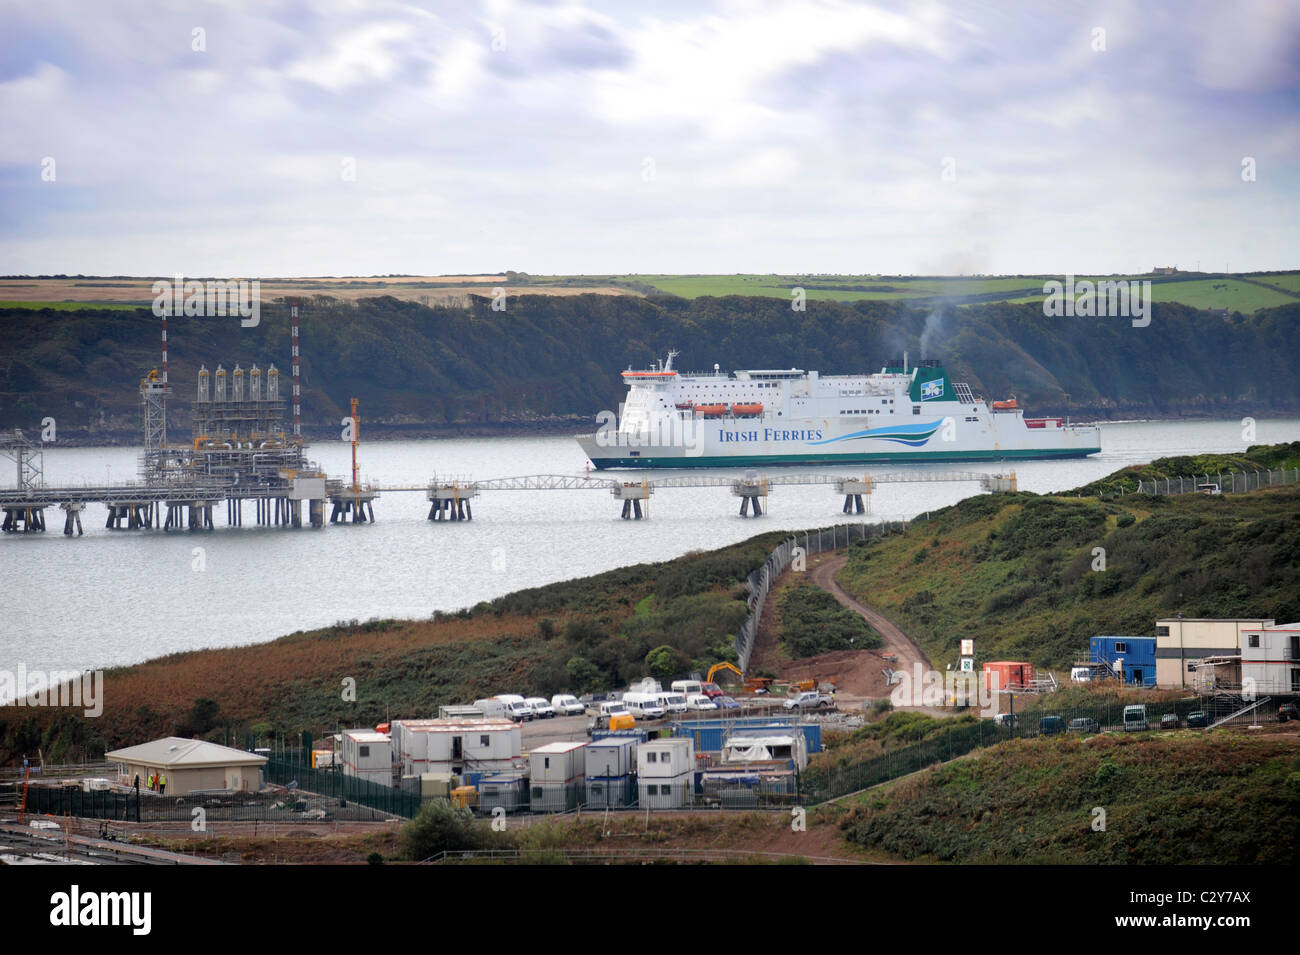 Vista desde Milford Haven con amarres de refinería de petróleo y un barco de pasajeros Irish Ferries Gales UK Foto de stock